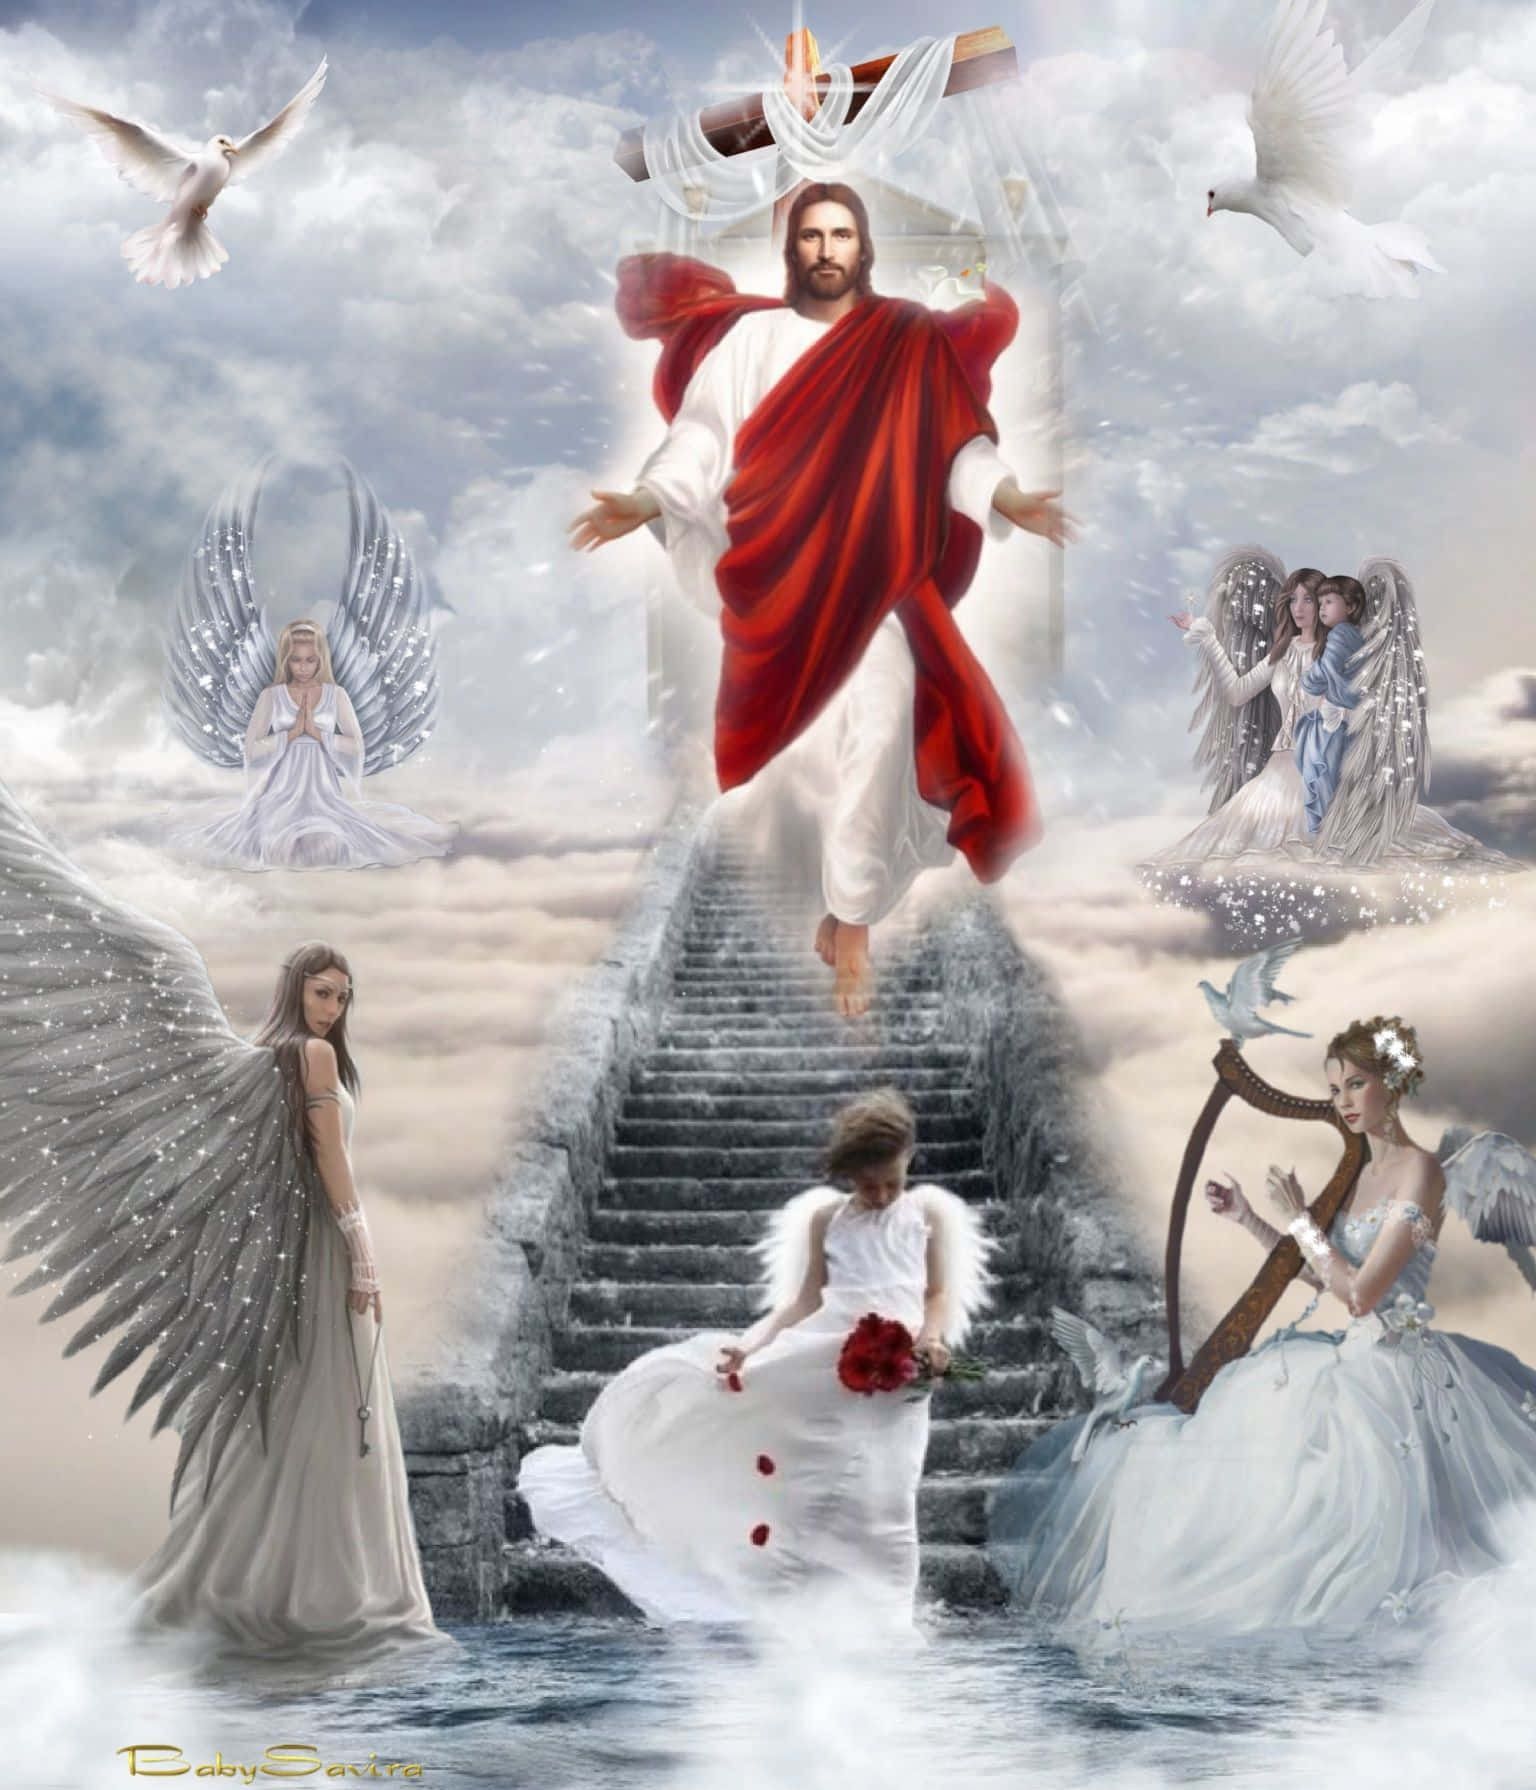 [100+] Jesus In Heaven Wallpapers | Wallpapers.com